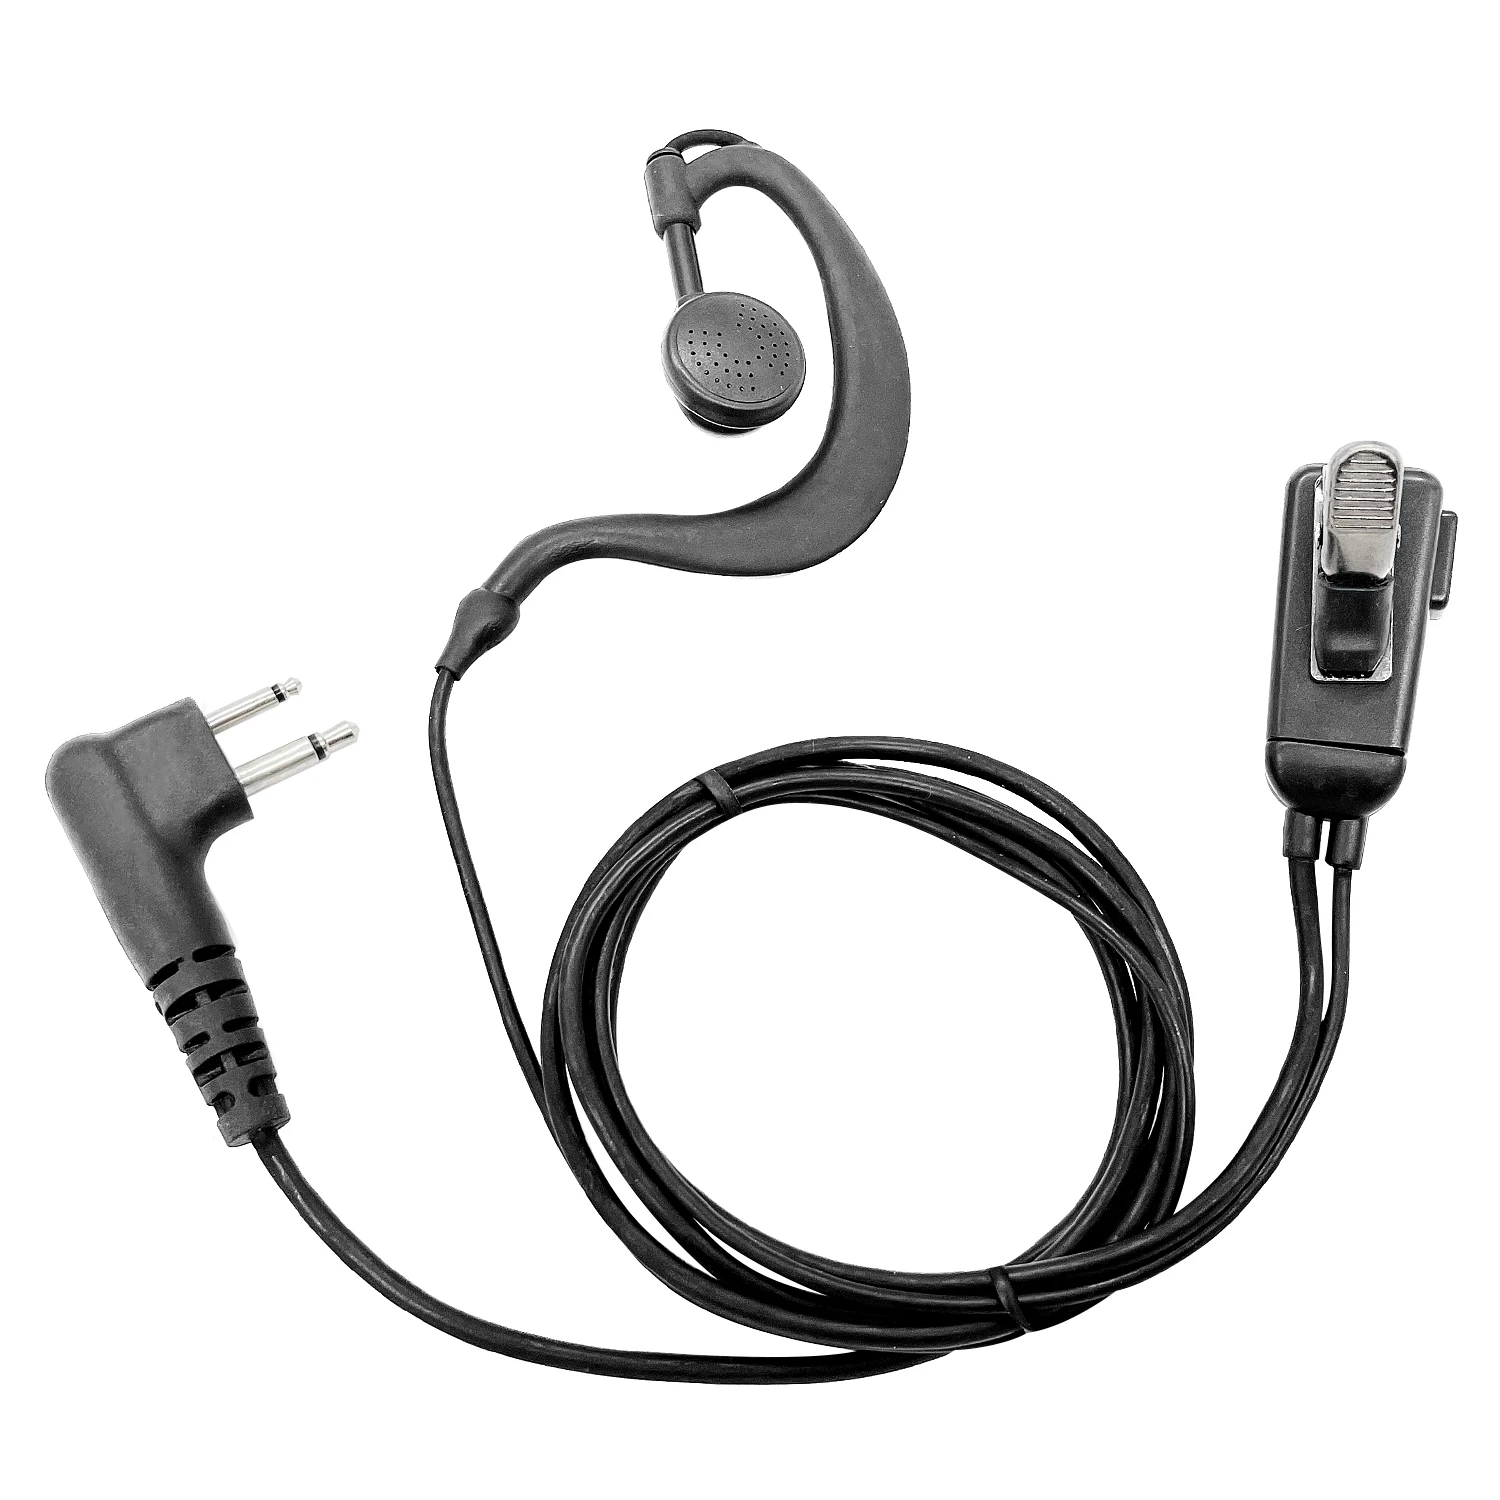 2 Pack Type G headphones walkie talkie headset Earpiece microphone for motorola CP010,CP140,GP68,EP450,DEP450,CT150,250,450 enlarge